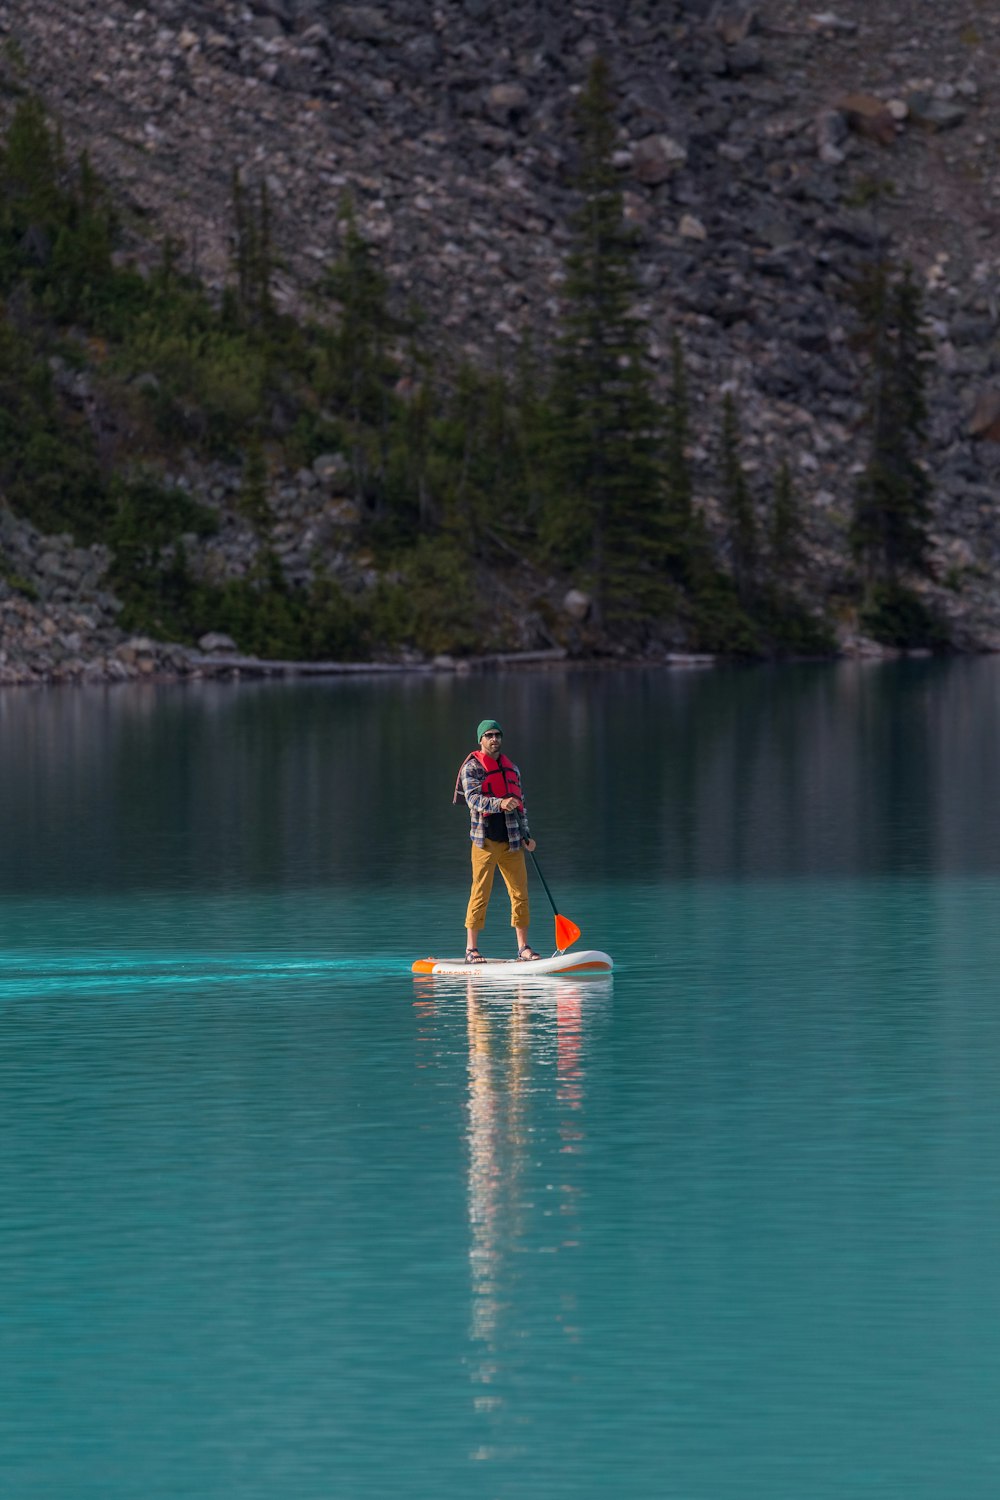 man in red shirt riding yellow kayak on blue water during daytime